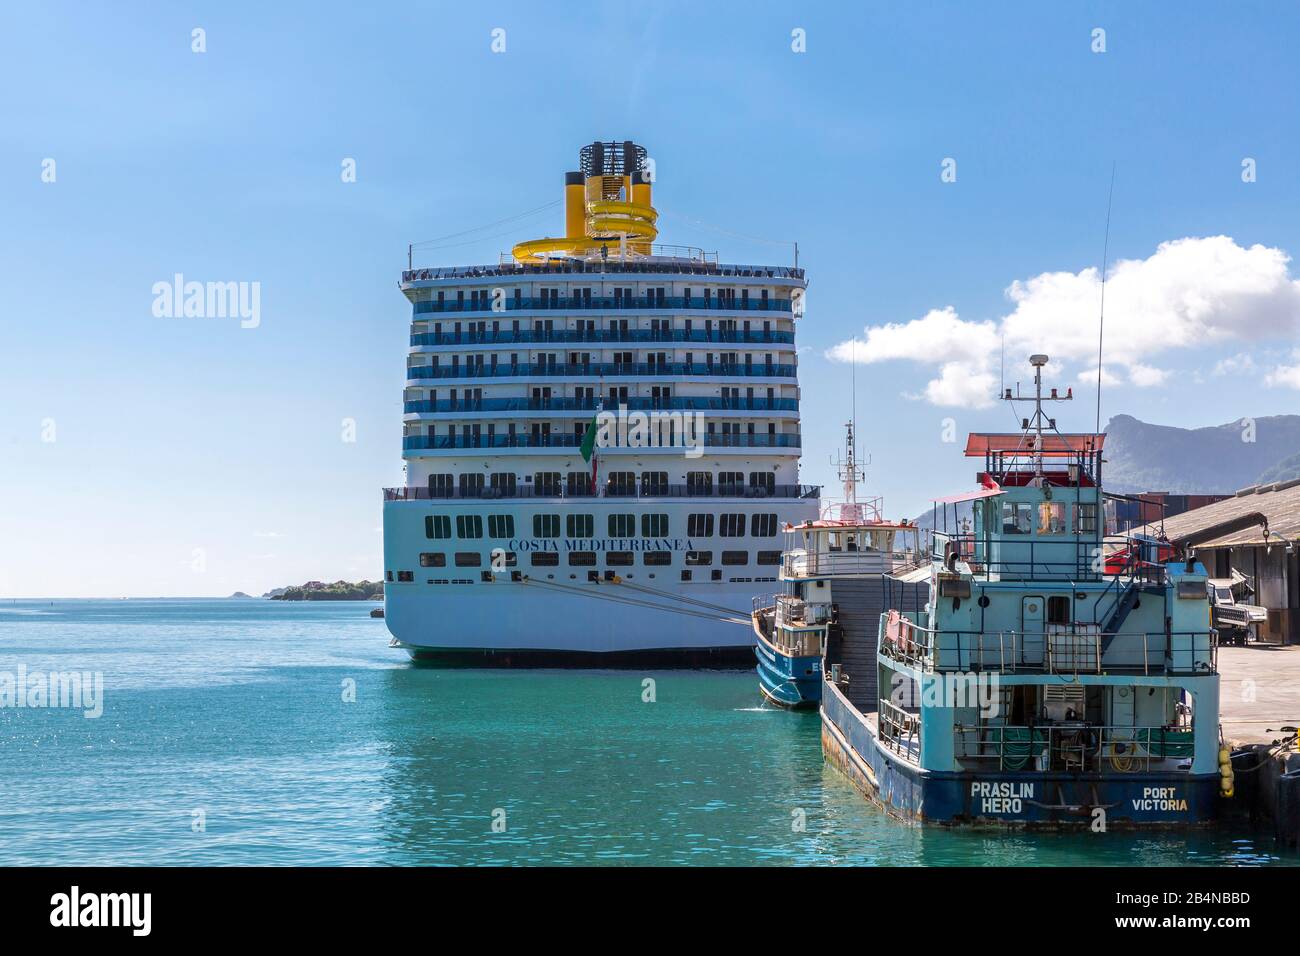 Das Kreuzfahrtschiff Costa Mediterranea Im Hafen Von Victoria, Insel Mahe, Seychellen, Indischer Ozean, Afrika Foto Stock